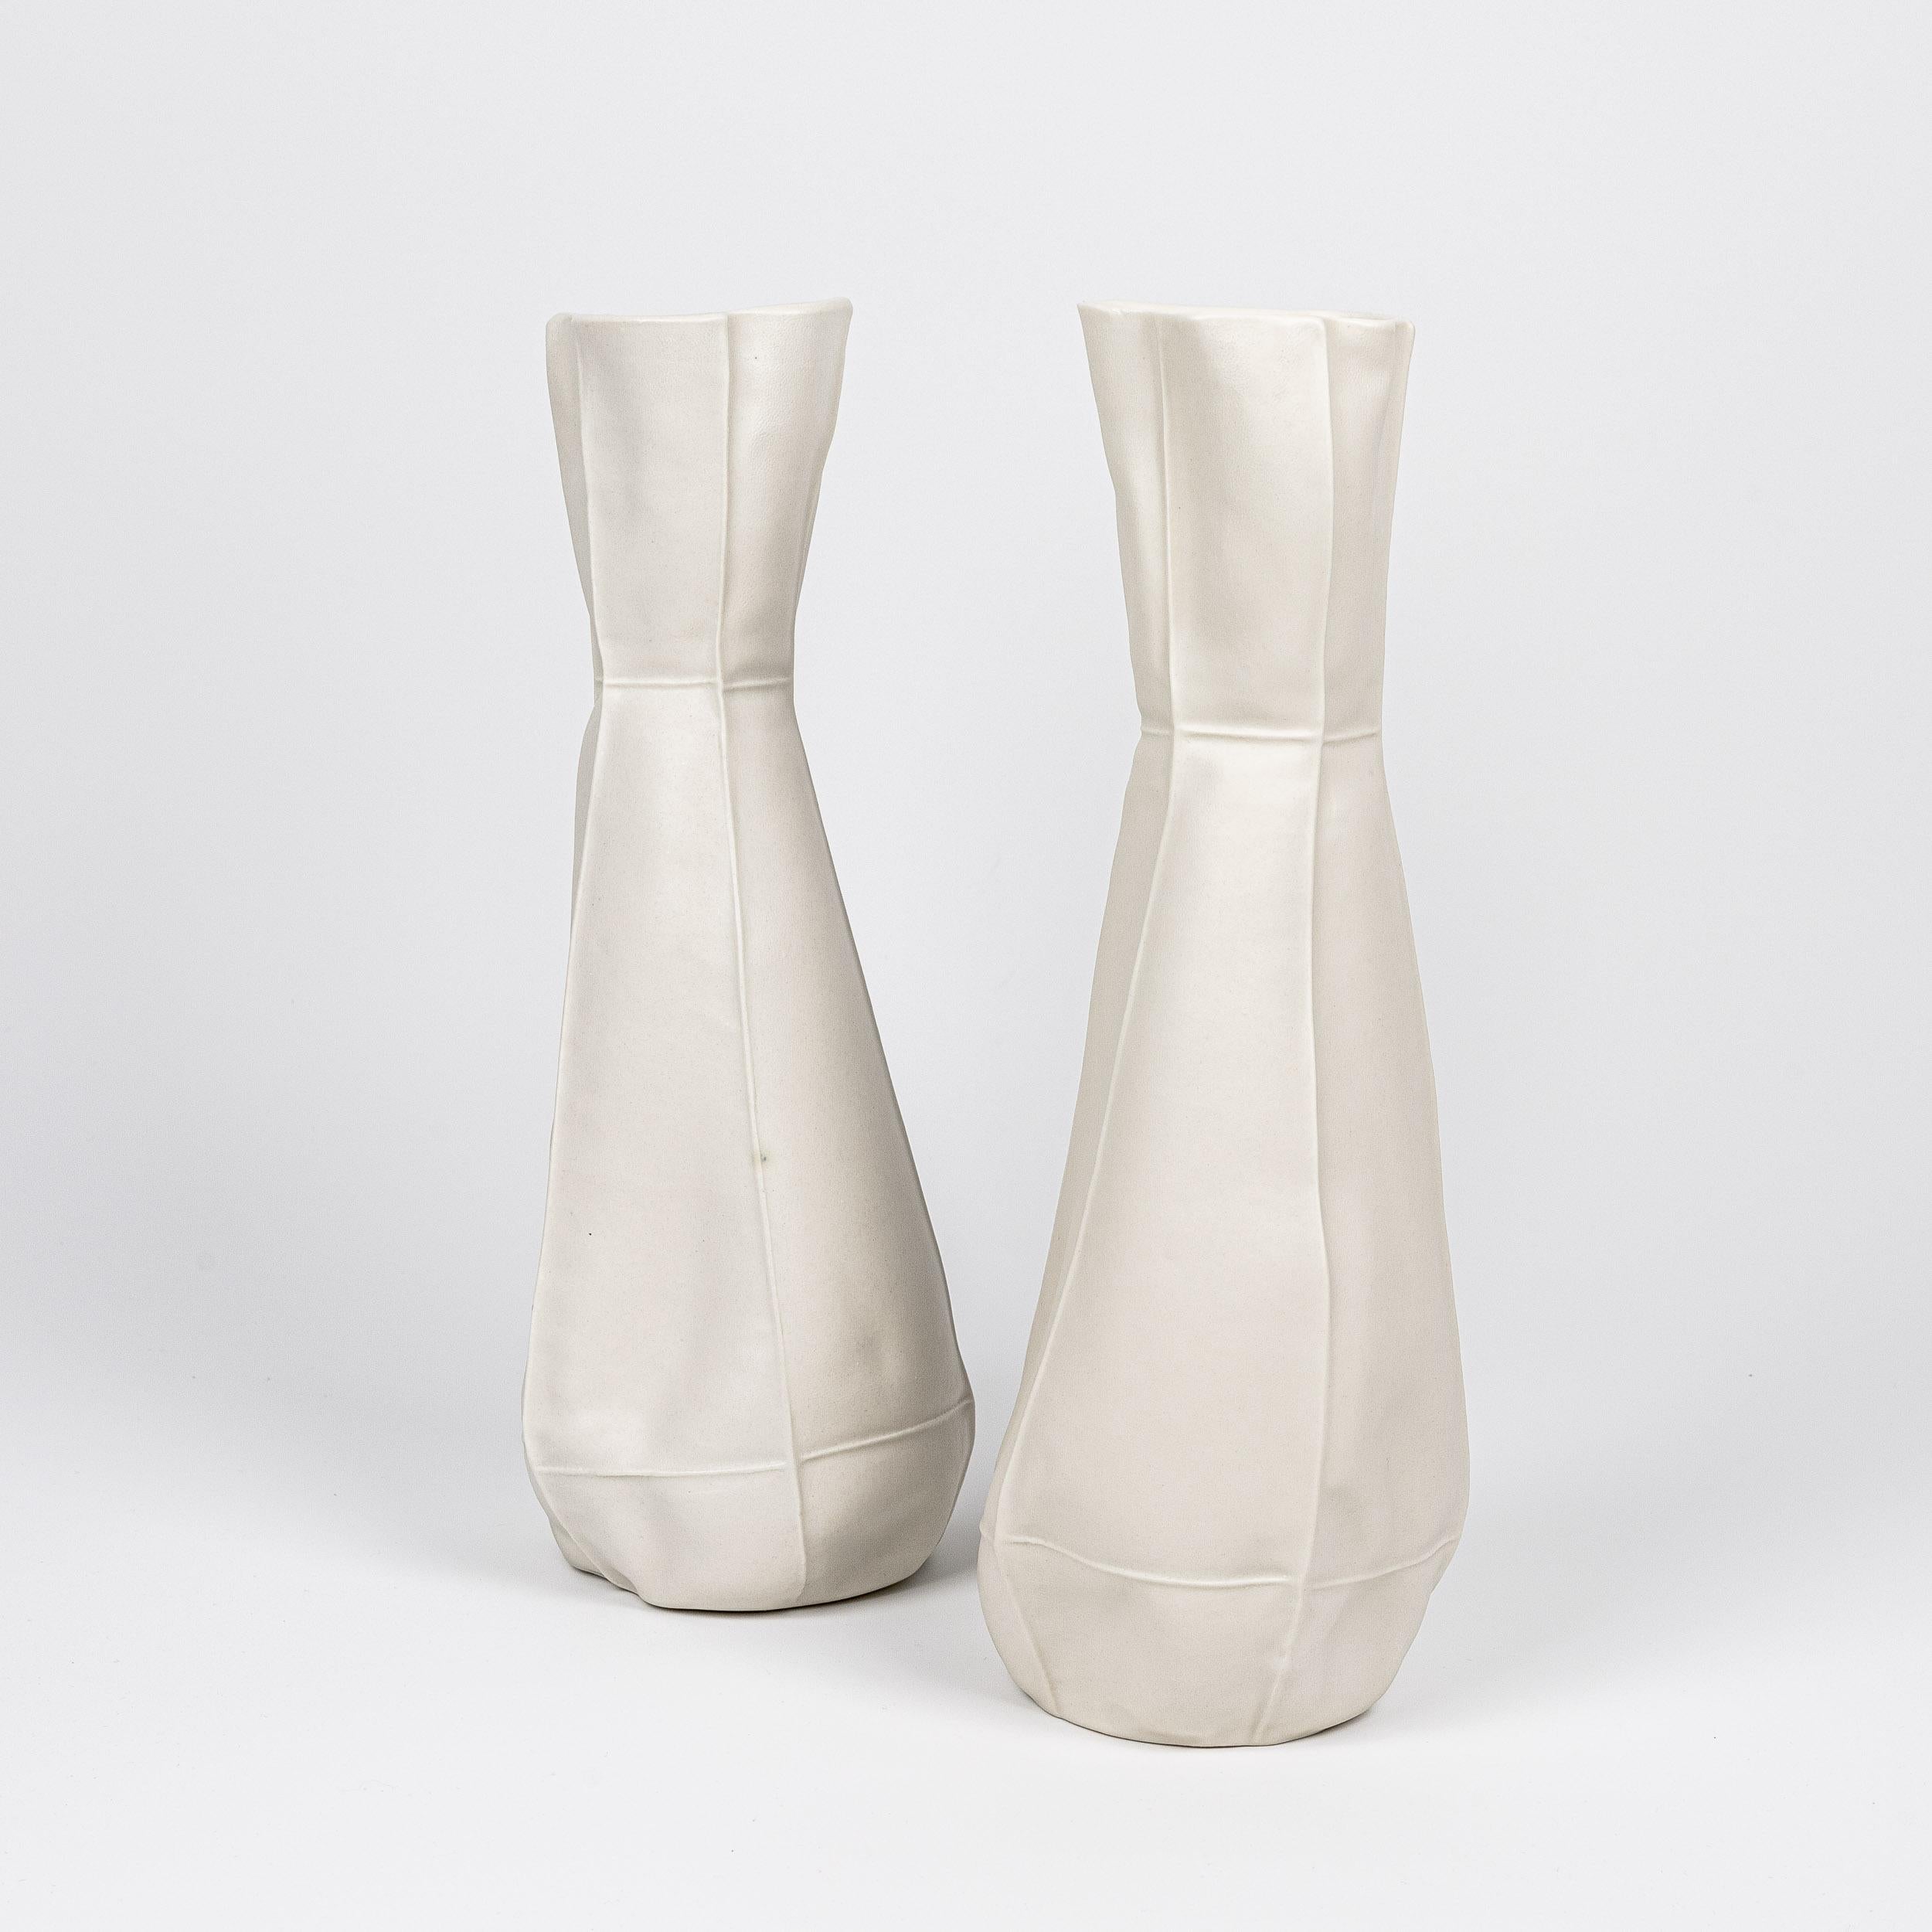 Un grand vase à fleurs en porcelaine avec une surface organique et semblable à du tissu. Un vernis transparent est appliqué sur la surface intérieure. En raison du processus de production, chaque vase est unique. 

Le vase est étanche.